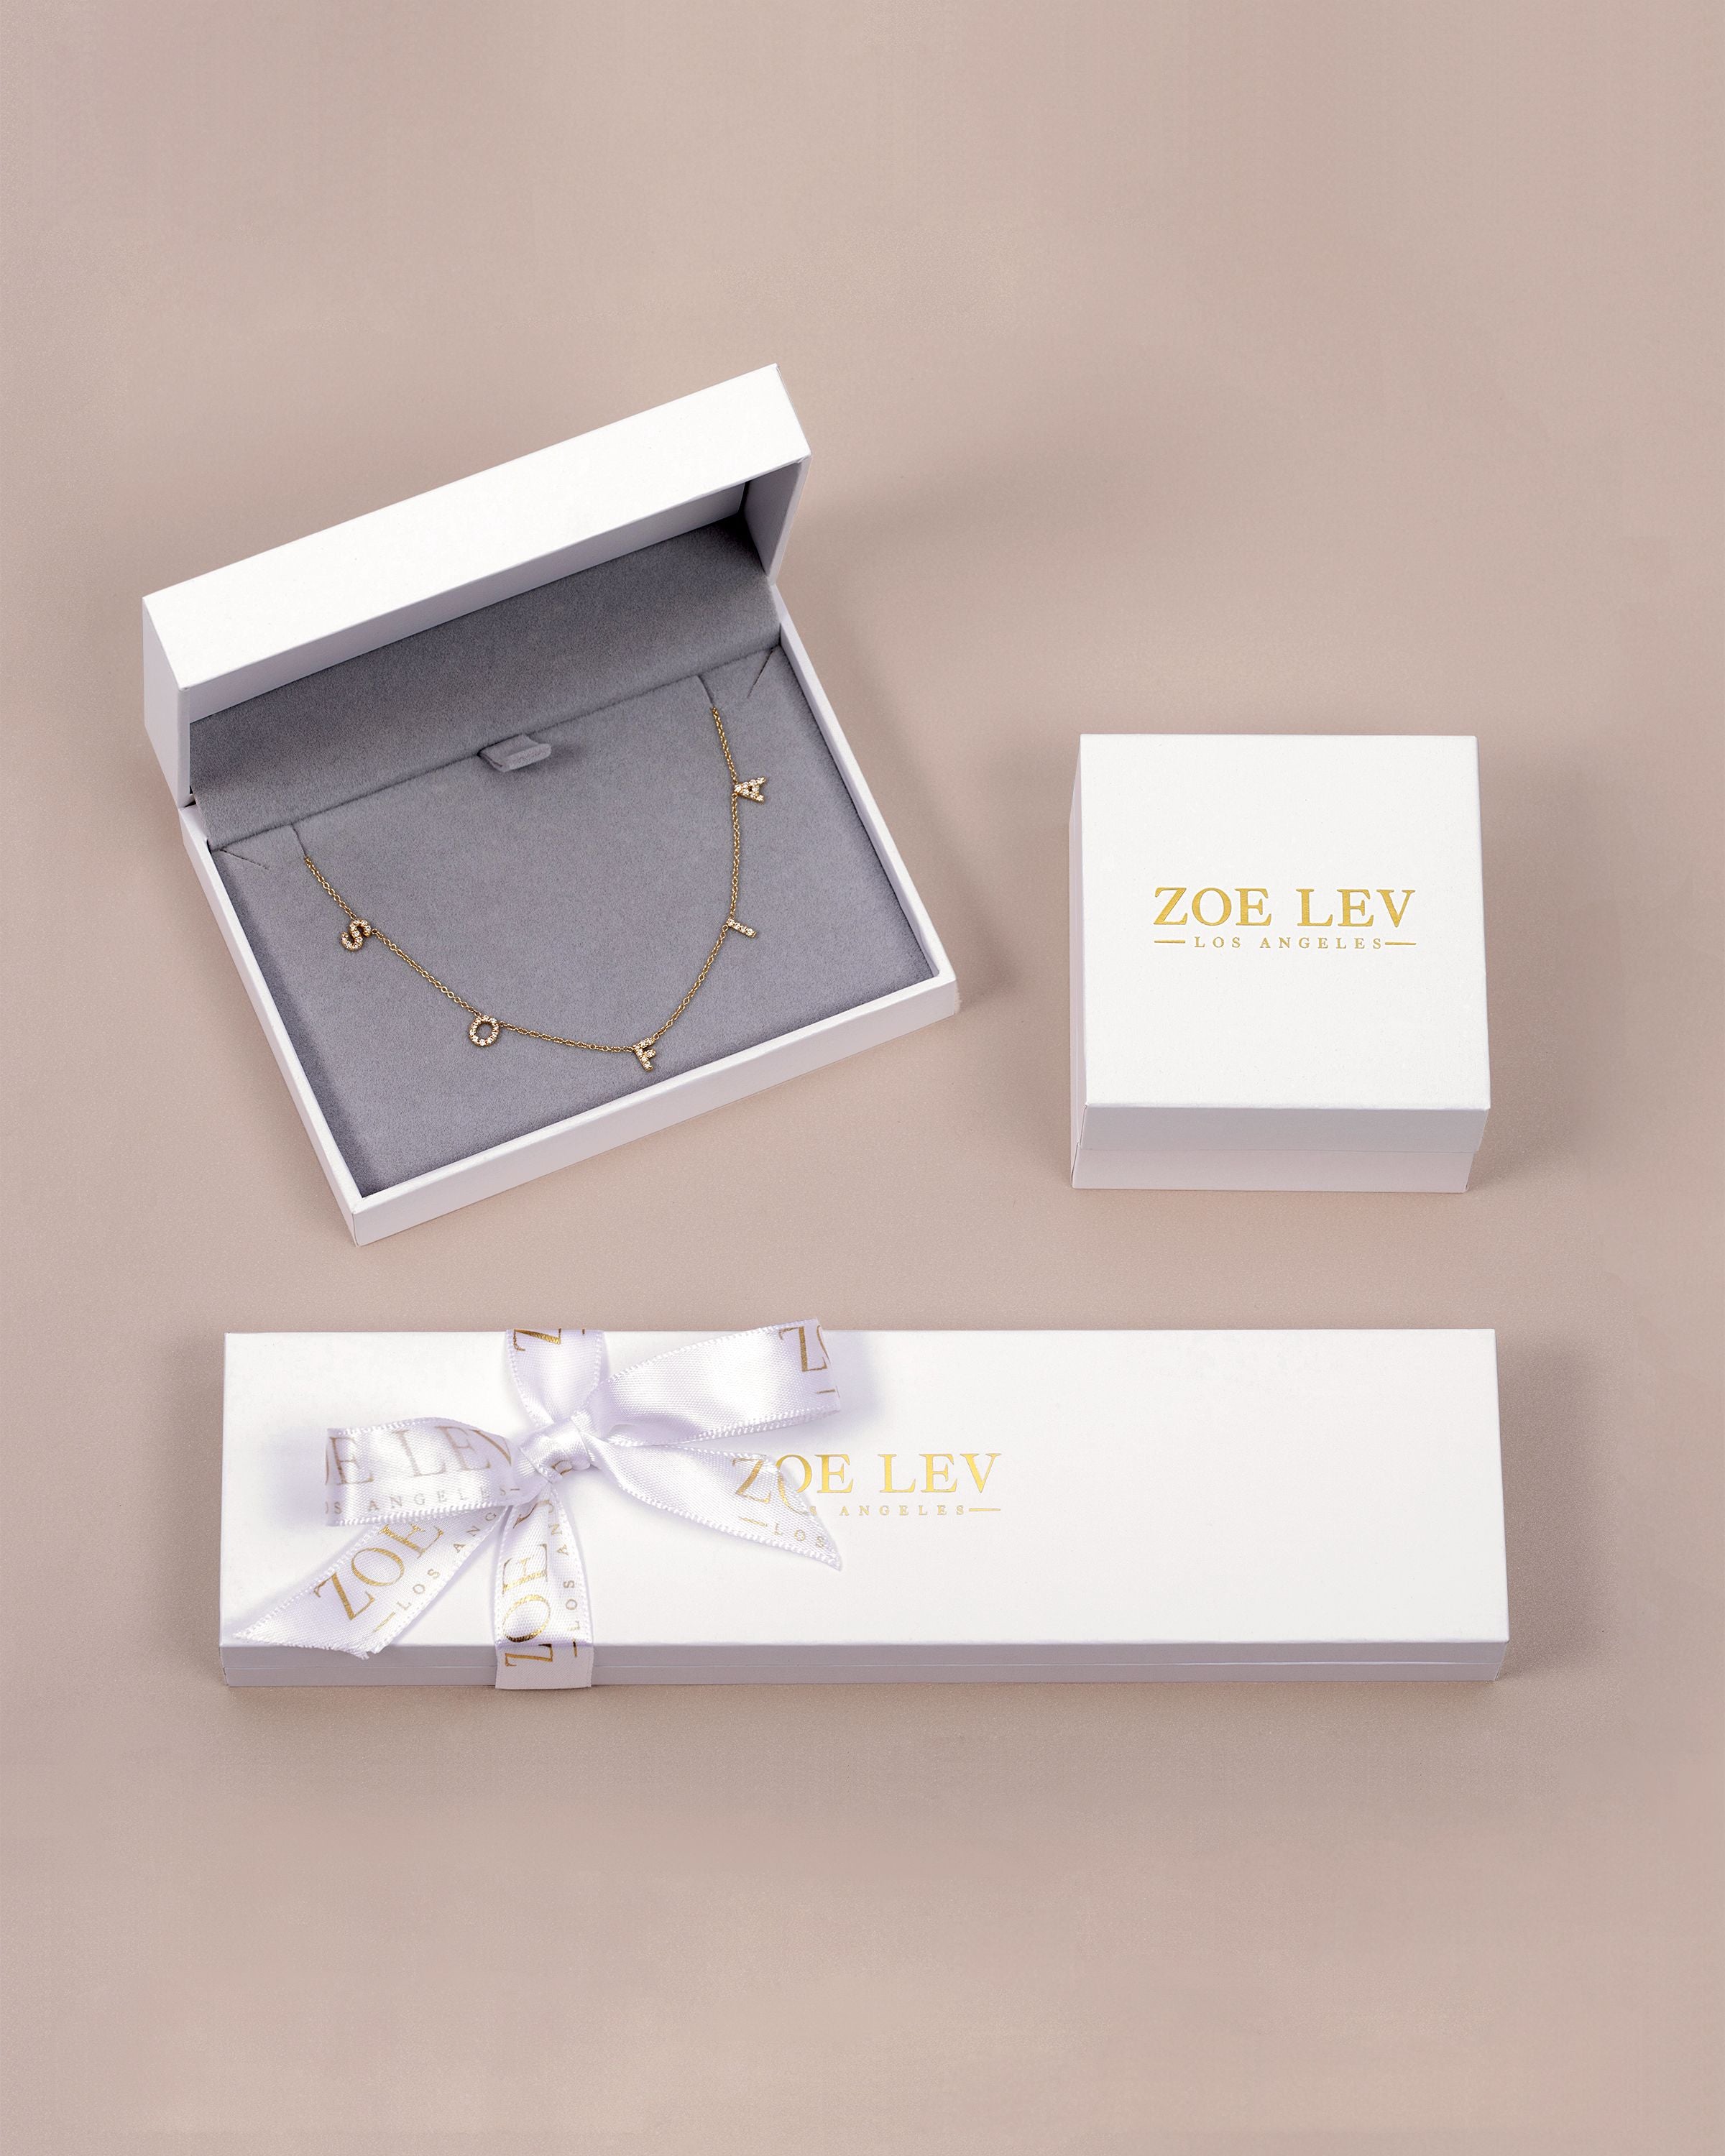 One Way Arrow Diamond Stud Earrings in 14K Rose Gold – LuvMyJewelry